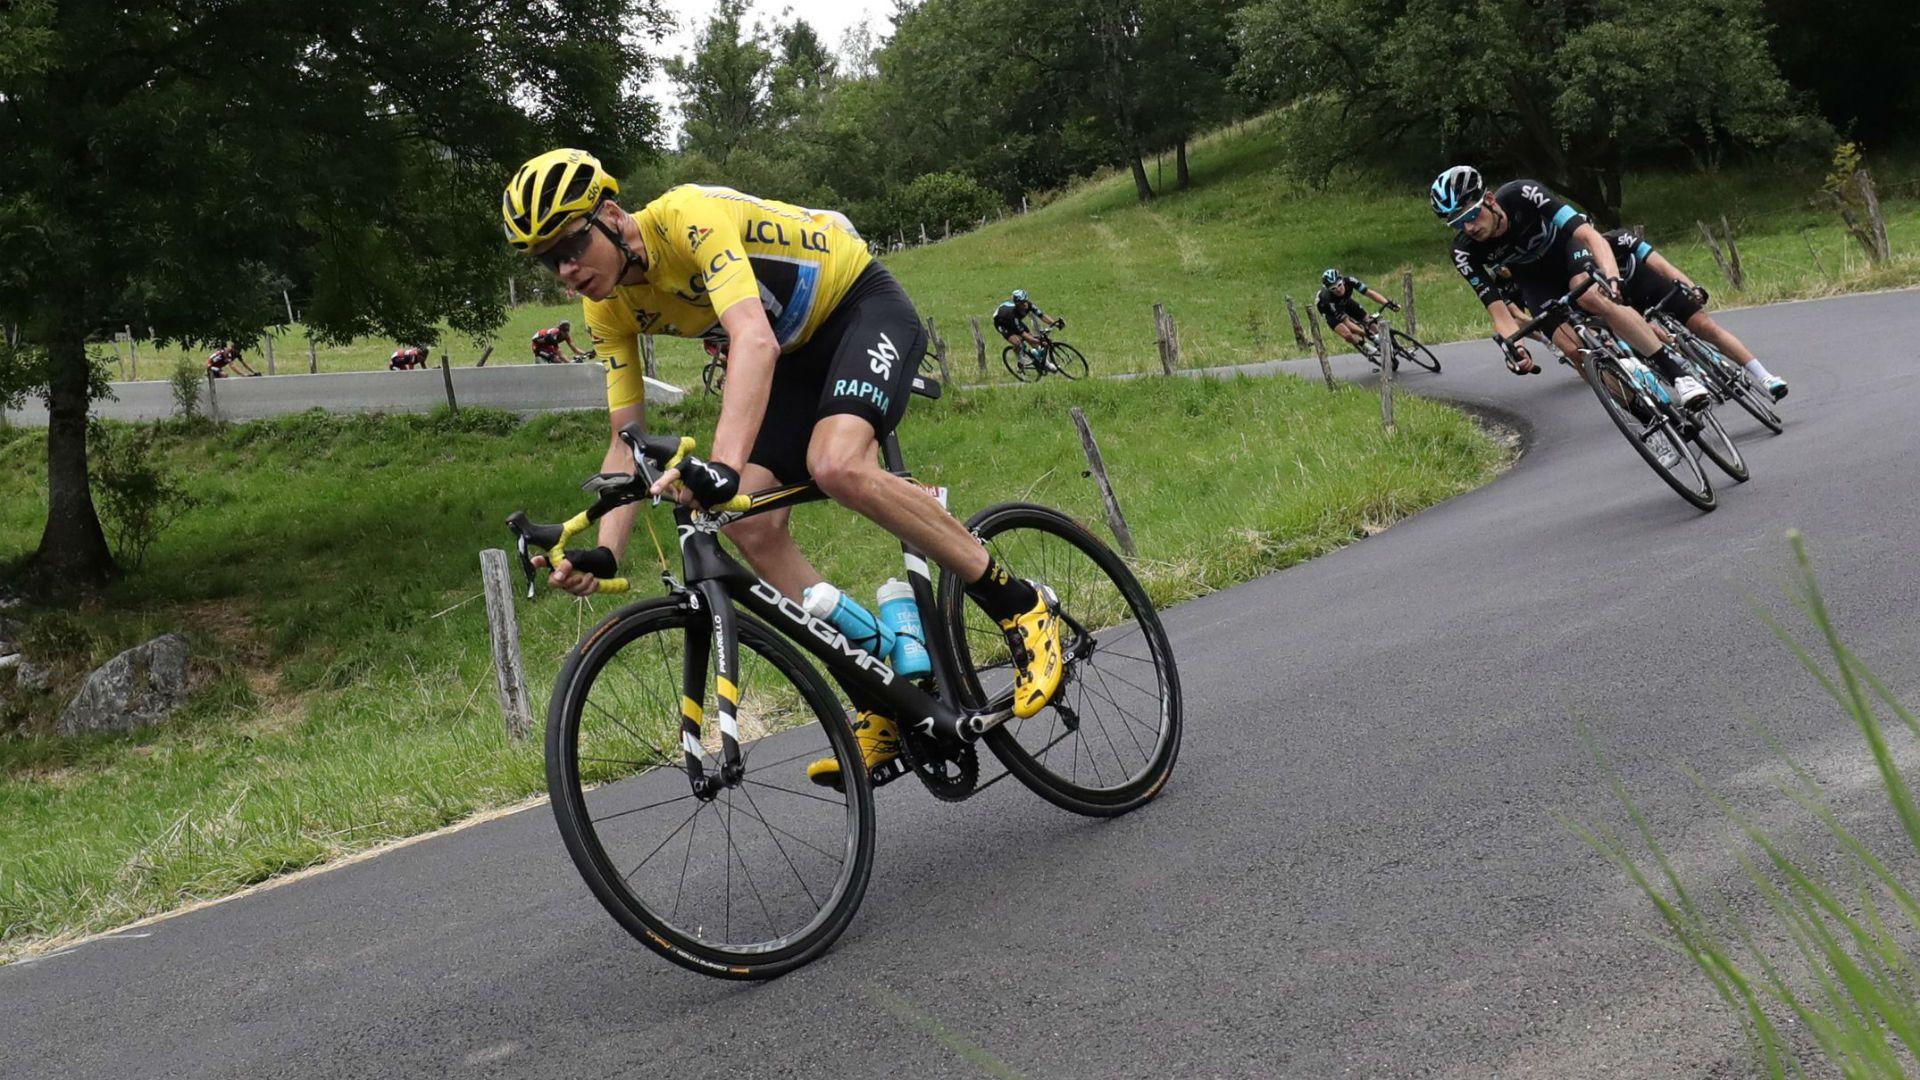 Tour de France 2016: Rain wreaks havoc as Froome retains lead